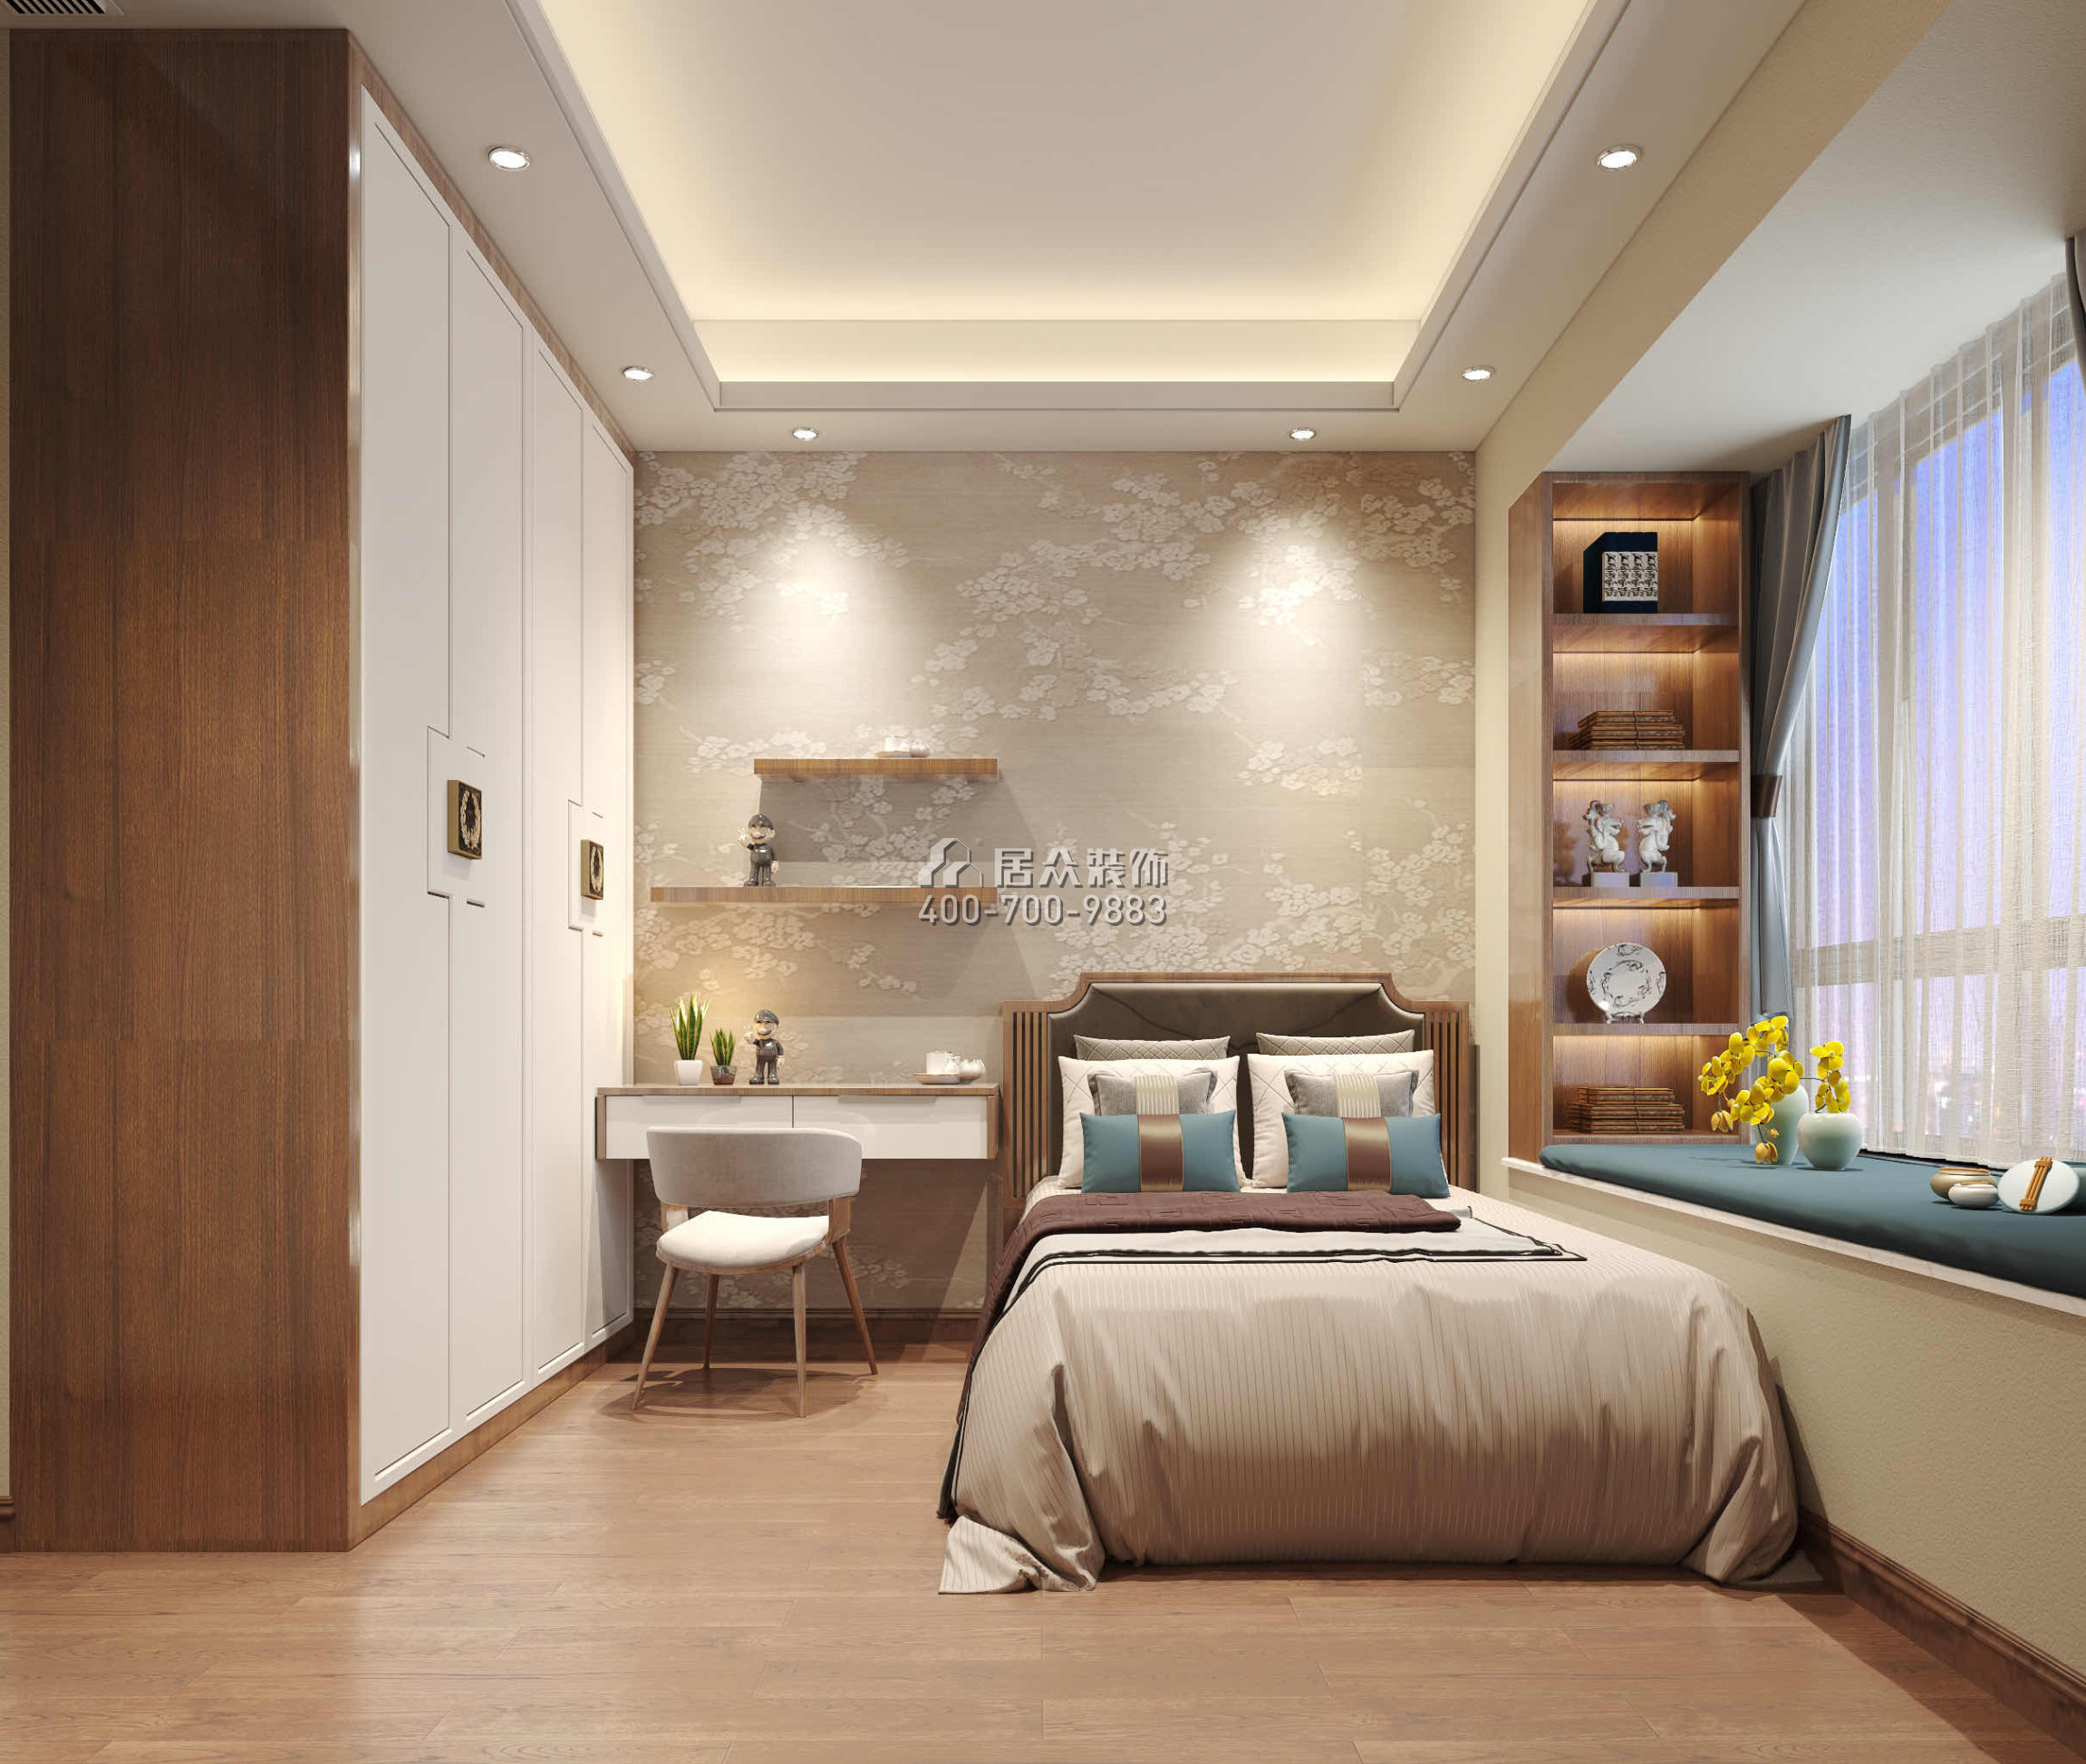 华发峰景湾216平方米中式风格平层户型卧室装修效果图